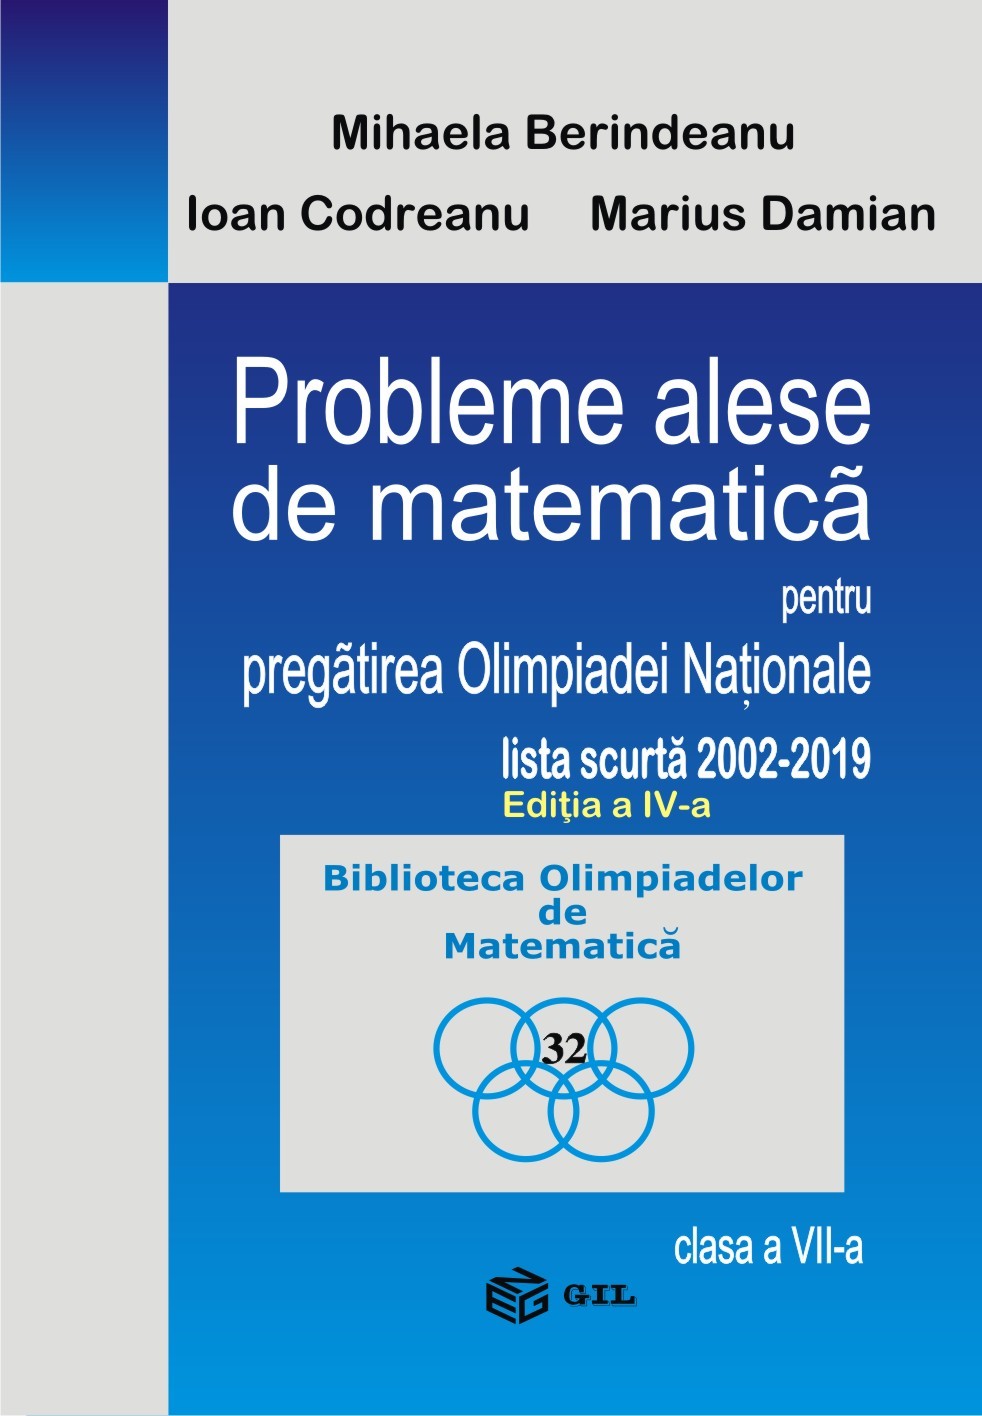 Probleme alese de matematica pentru pregatirea Olimpiadei Nationale-lista scurta 2002-2019, clasa a VII-a